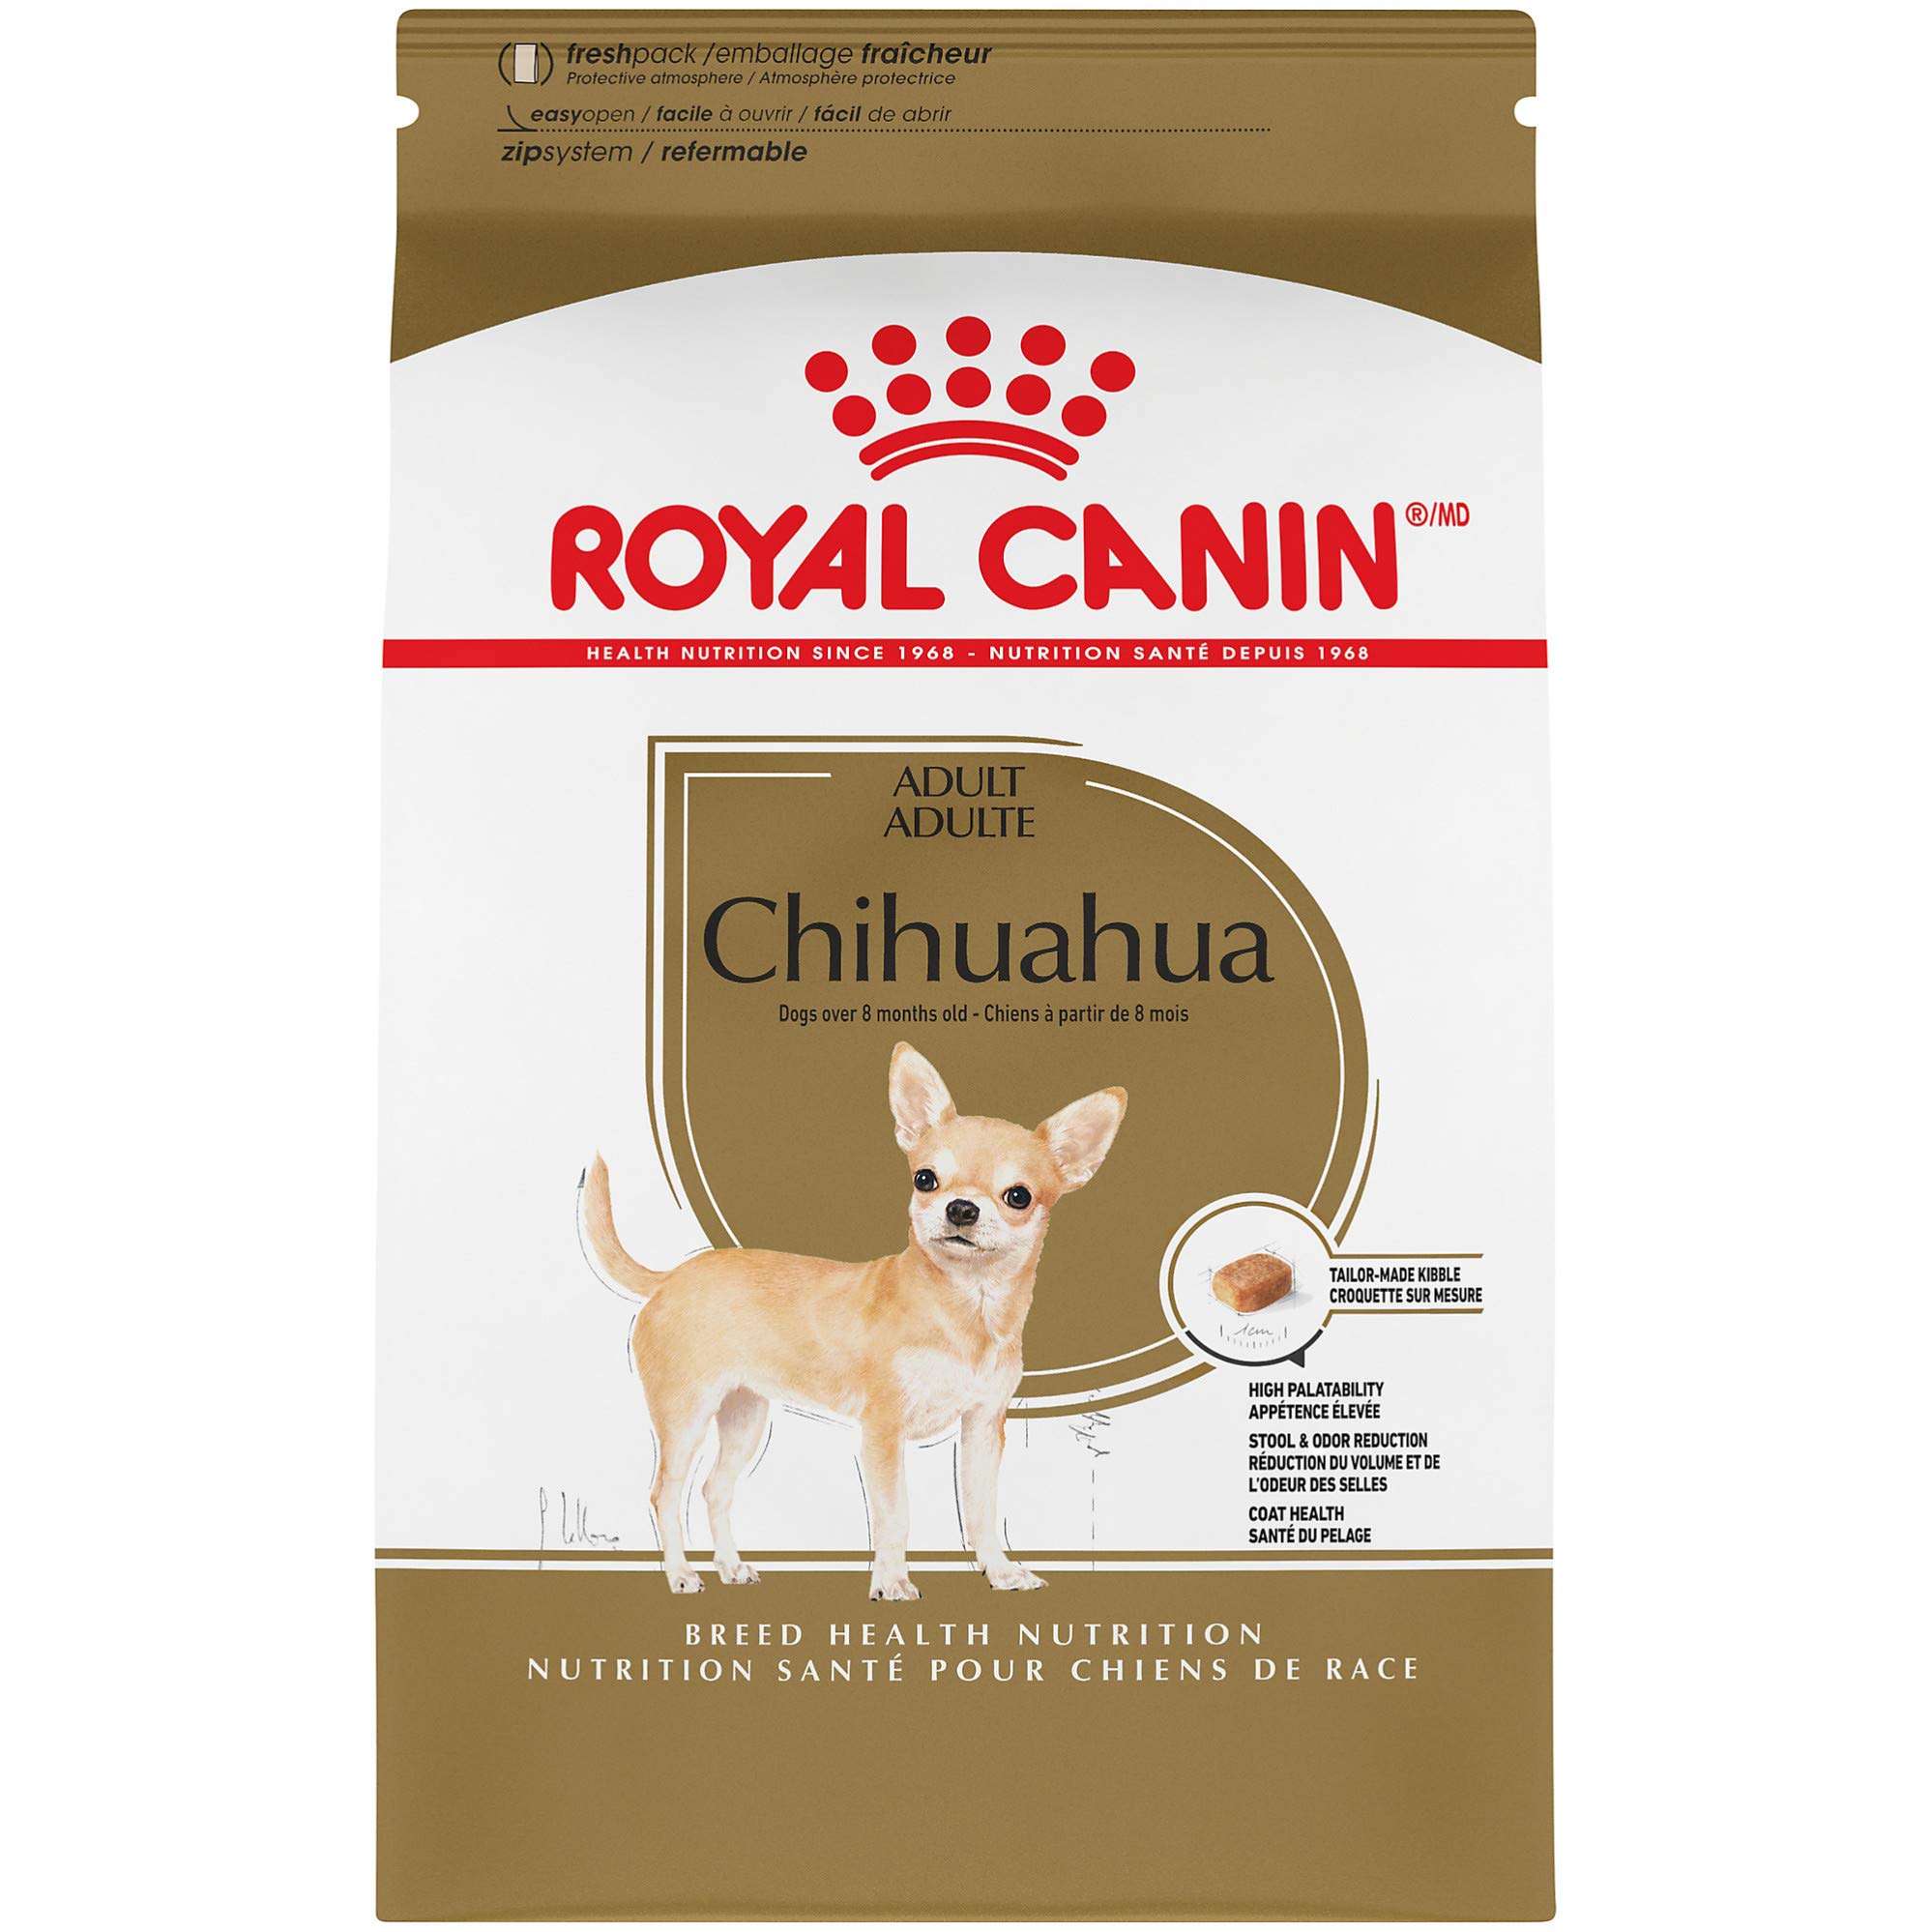 Royal Canin 品種健康栄養チワワ成犬用ドライドッグフード...